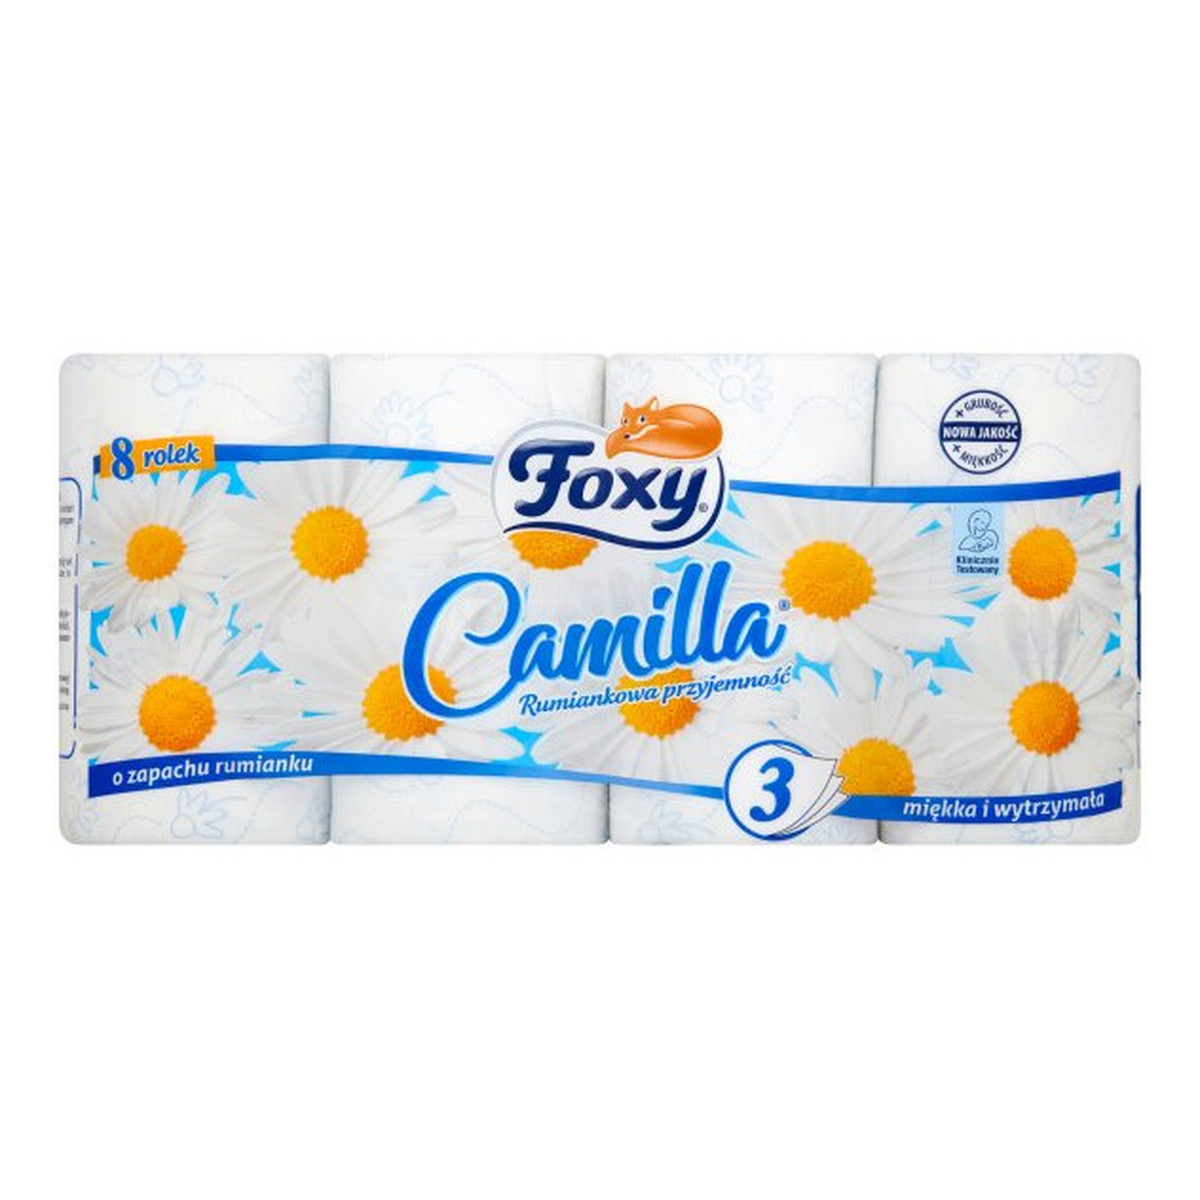 Foxy Camilla Papier toaletowy o zapachu rumianku 8 rolek